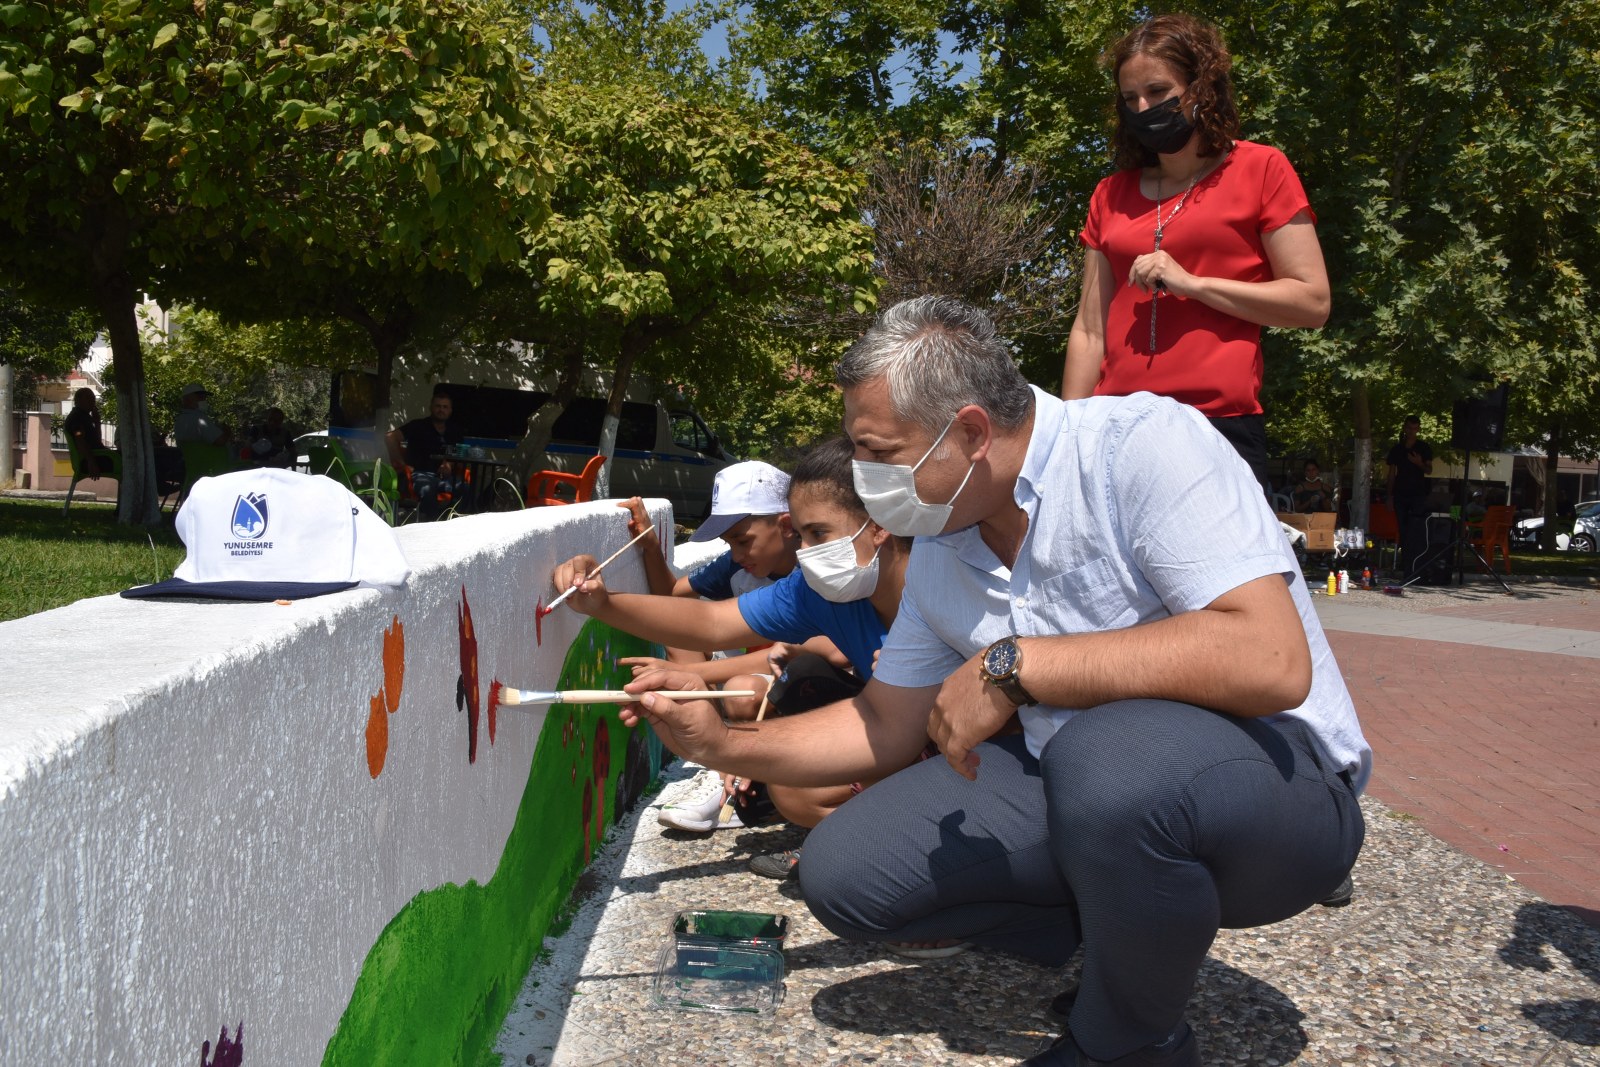  Yunusemre Belediyesi’nin Düzenlediği Boyama Etkinliği ile Laleli Mahallesi Renklendi